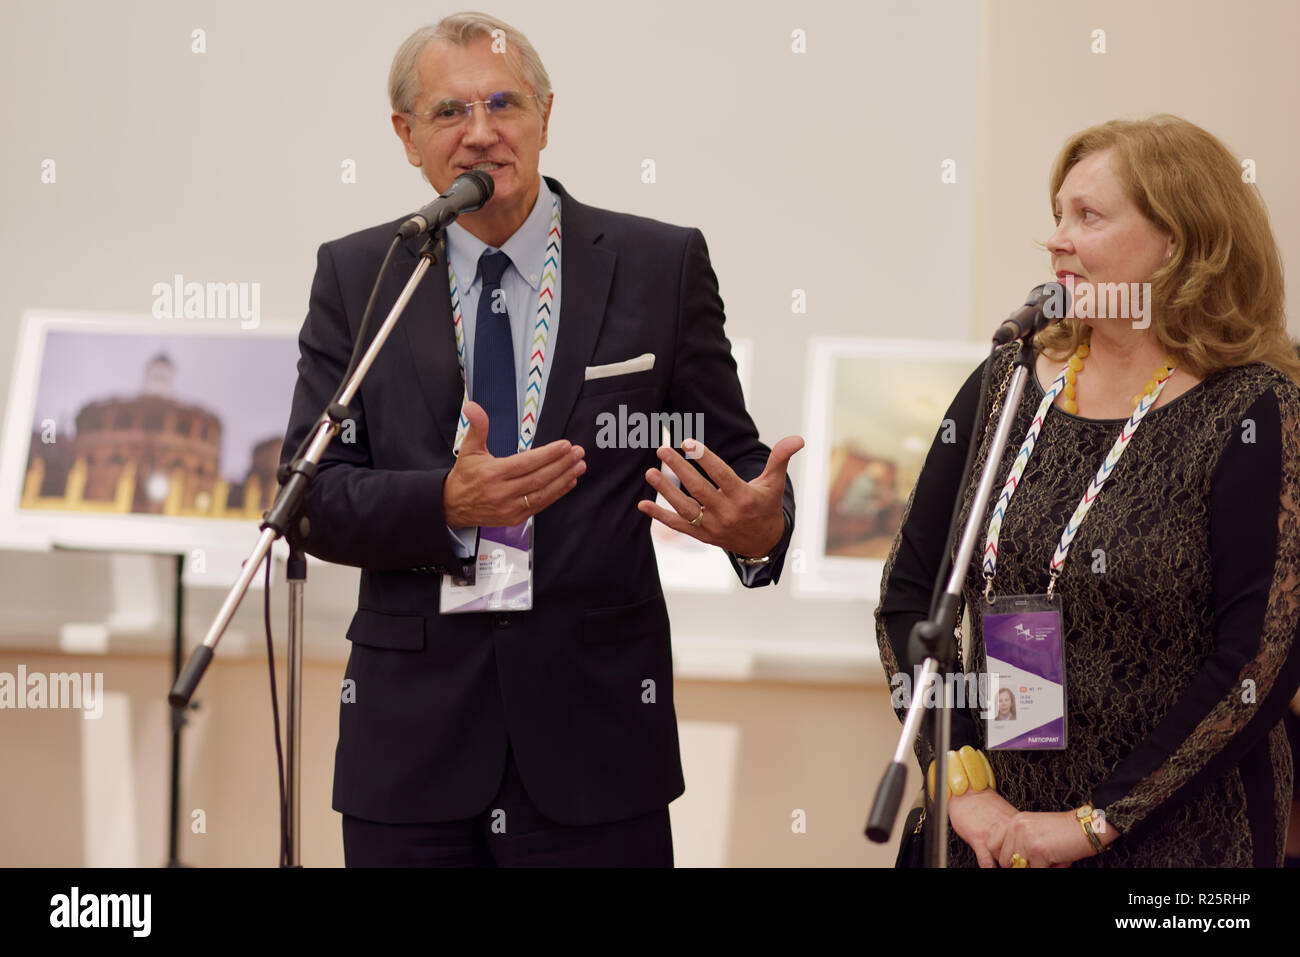 Saint-pétersbourg, Russie - 16 novembre 2018 : Walter Reicher, quartier-maître du Festival International de Joseph Haydn à Eisenstadt (à gauche) participe Banque D'Images